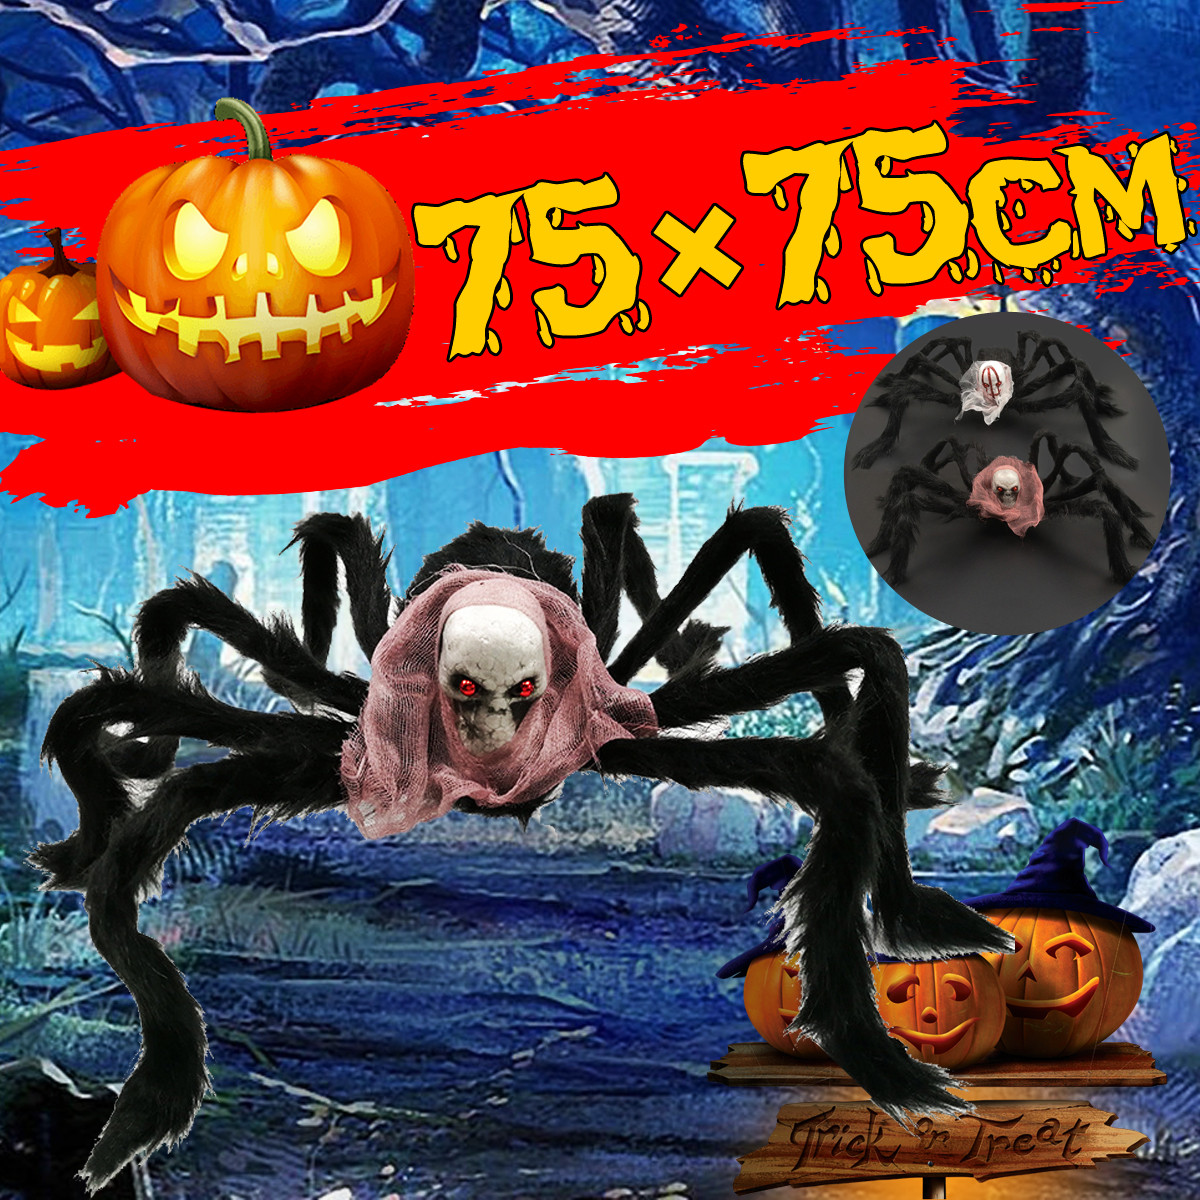 75*75cm Simulation Skull Ghost Head Plush Spider Spider Leg Straighten Horror Toy